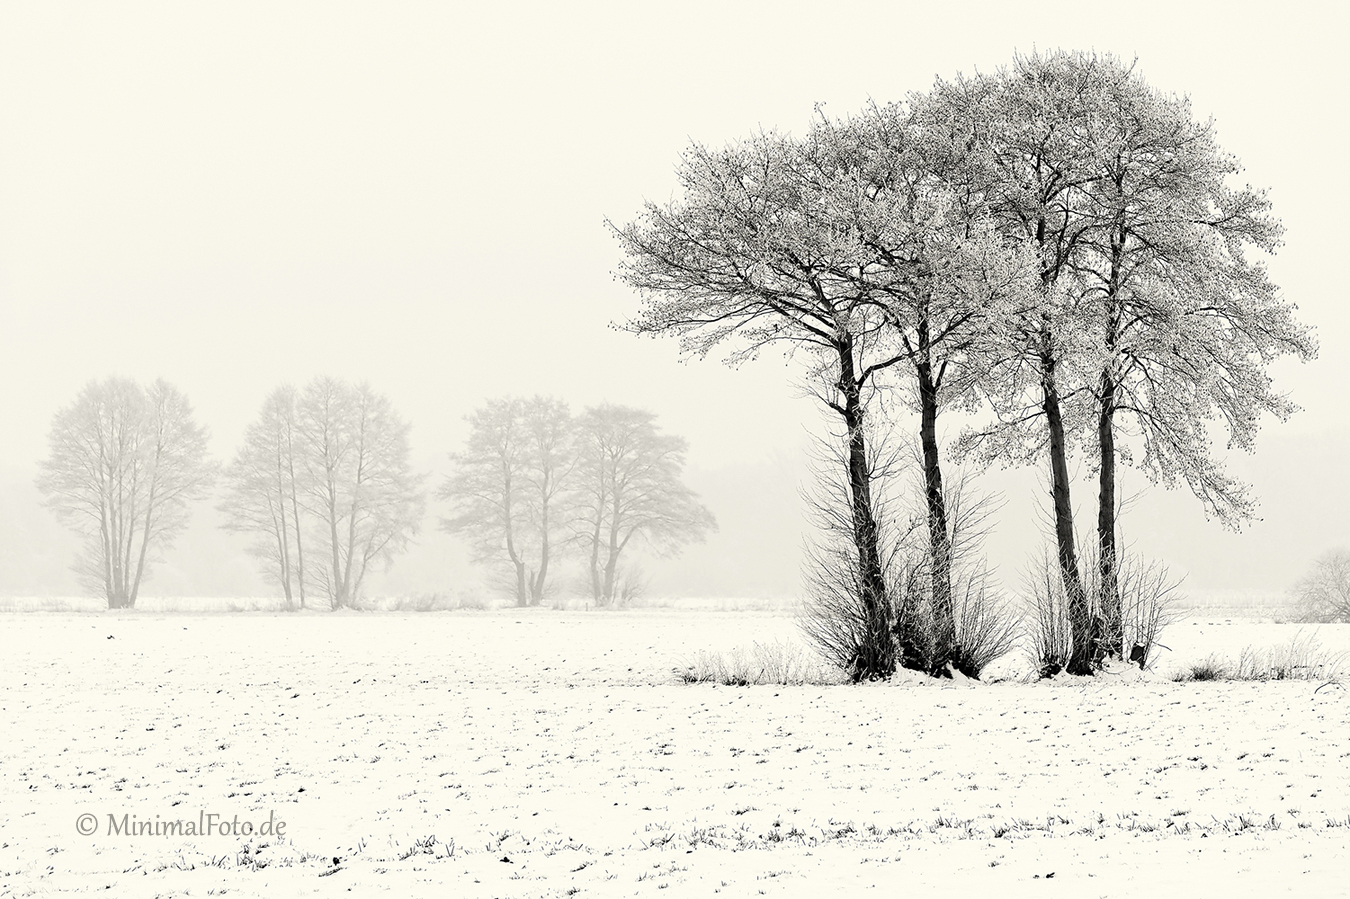 Baum-tree-winter-snow-schnee-Landschaft-landscape-Minimalismus-minimalistisch-minimalistic-black-white-schwarz-weiss-B_SAM0498-sw